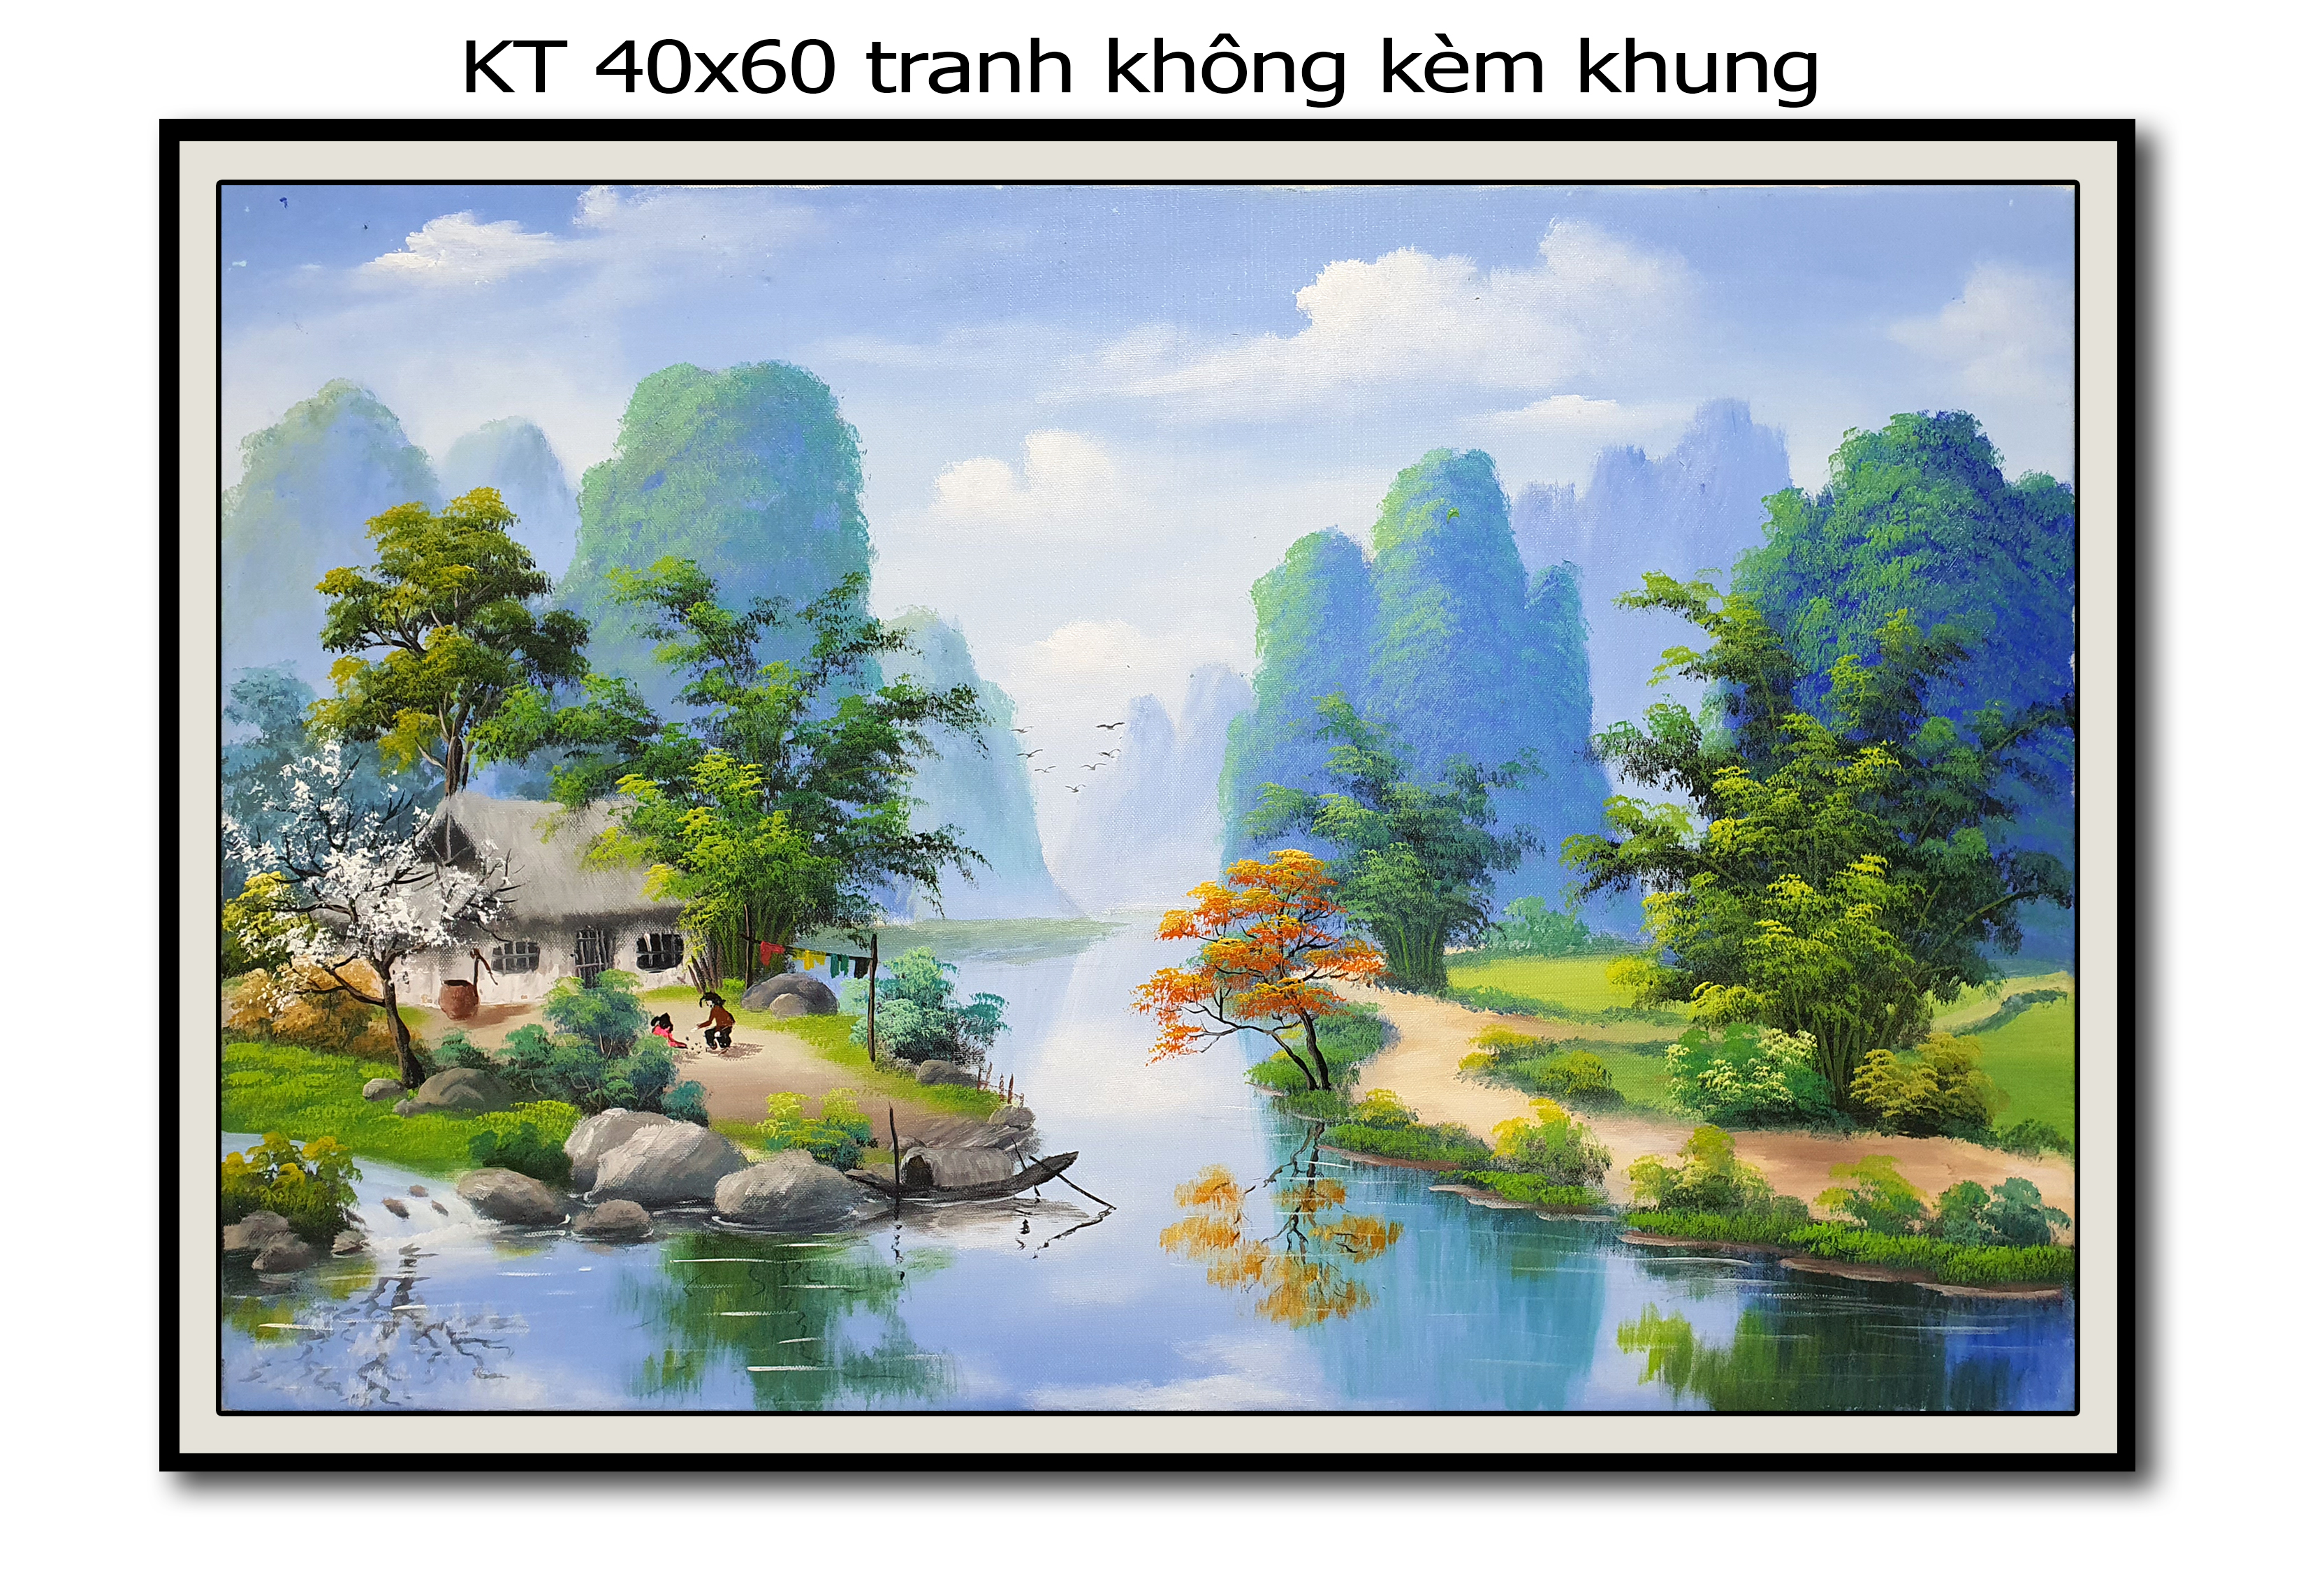 Học vẽ tranh phong cảnh, tranh tường 3d, dạy online miễn phí tại Hà Nội